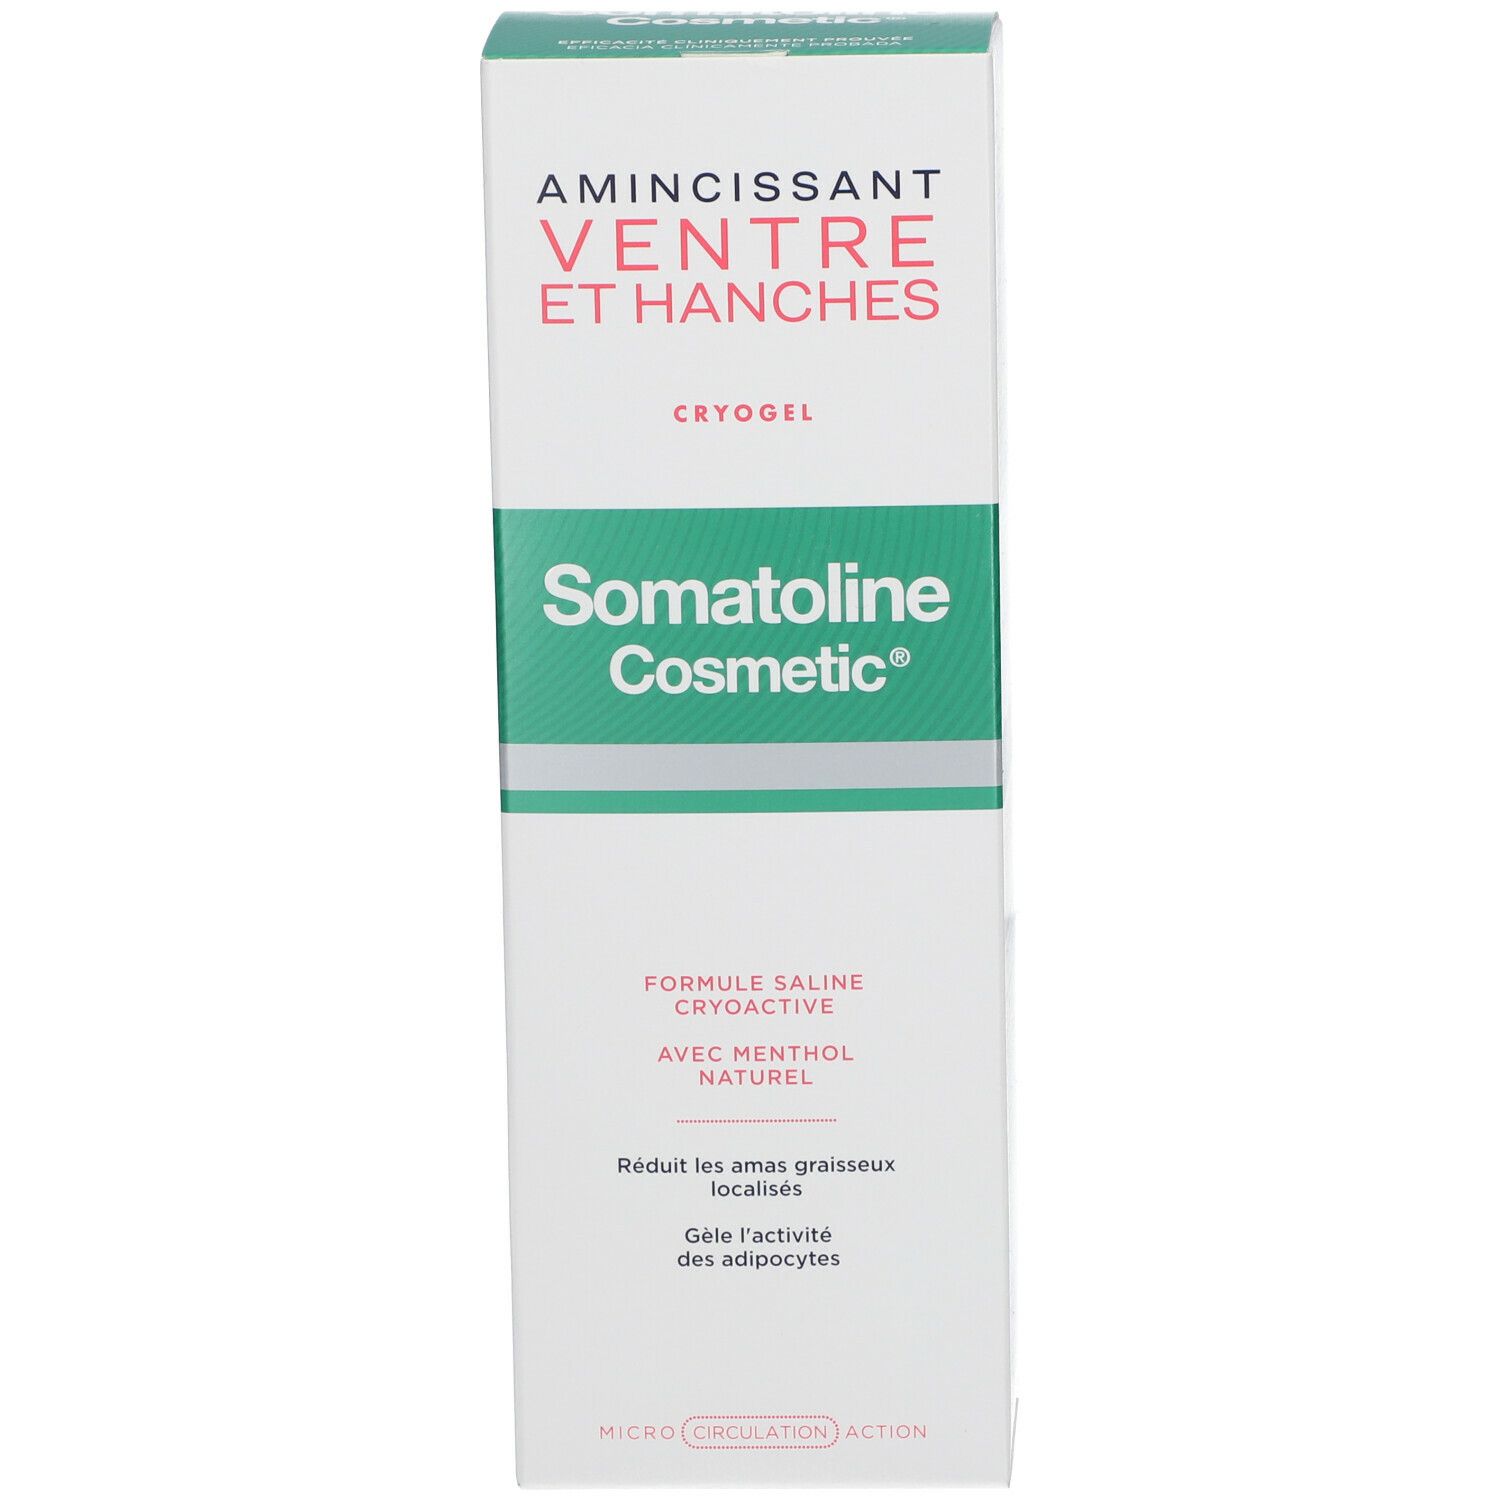 Somatoline Cosmetic® Bauch und Hüften